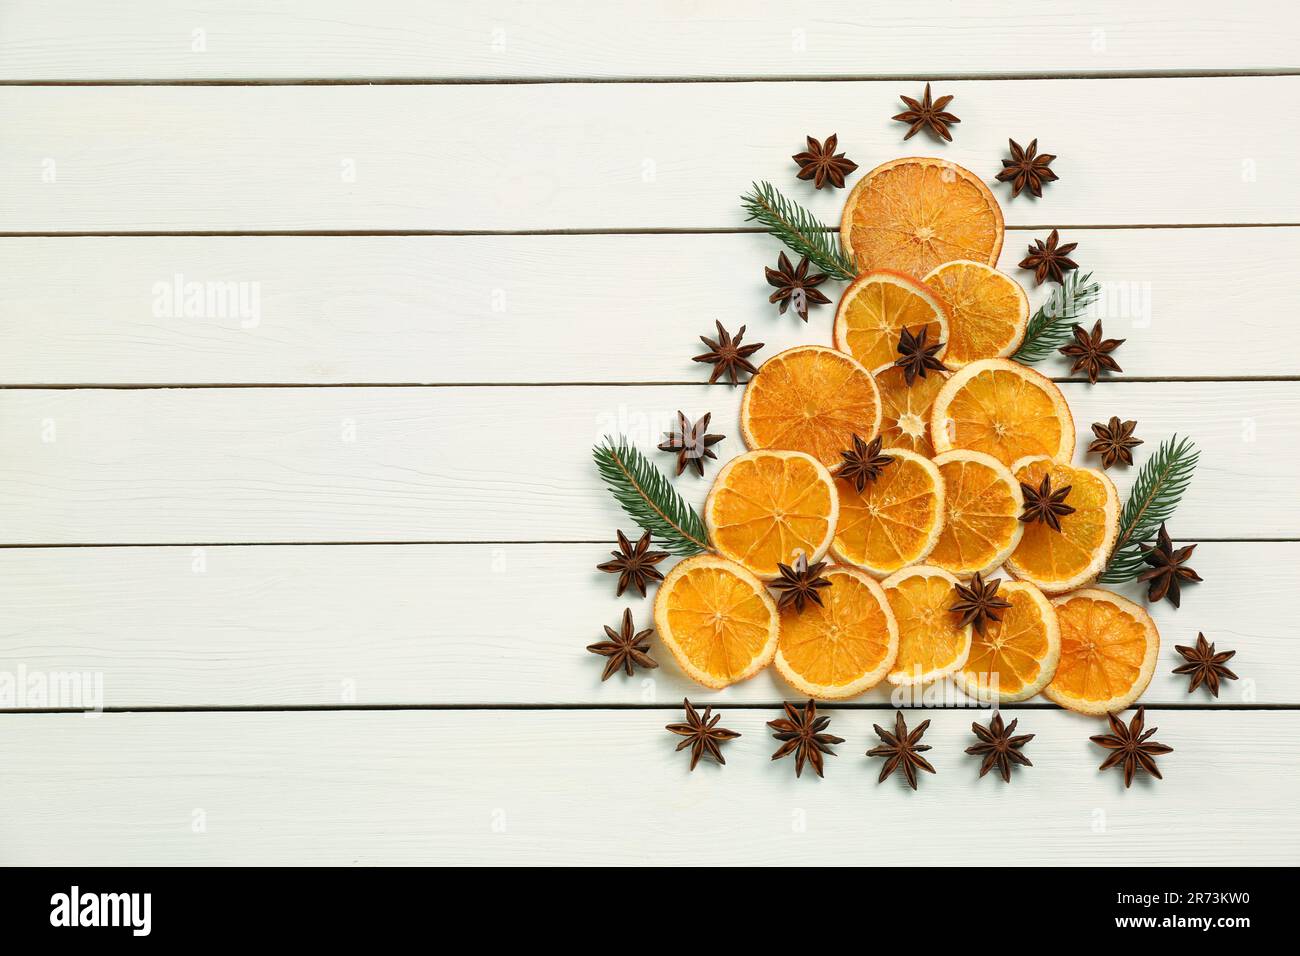 Composizione di posa piatta con fettine di arancio secco, rami di abete e stelle di anice disposte a forma di albero di Natale su tavola di legno bianco. Spazio per il testo Foto Stock